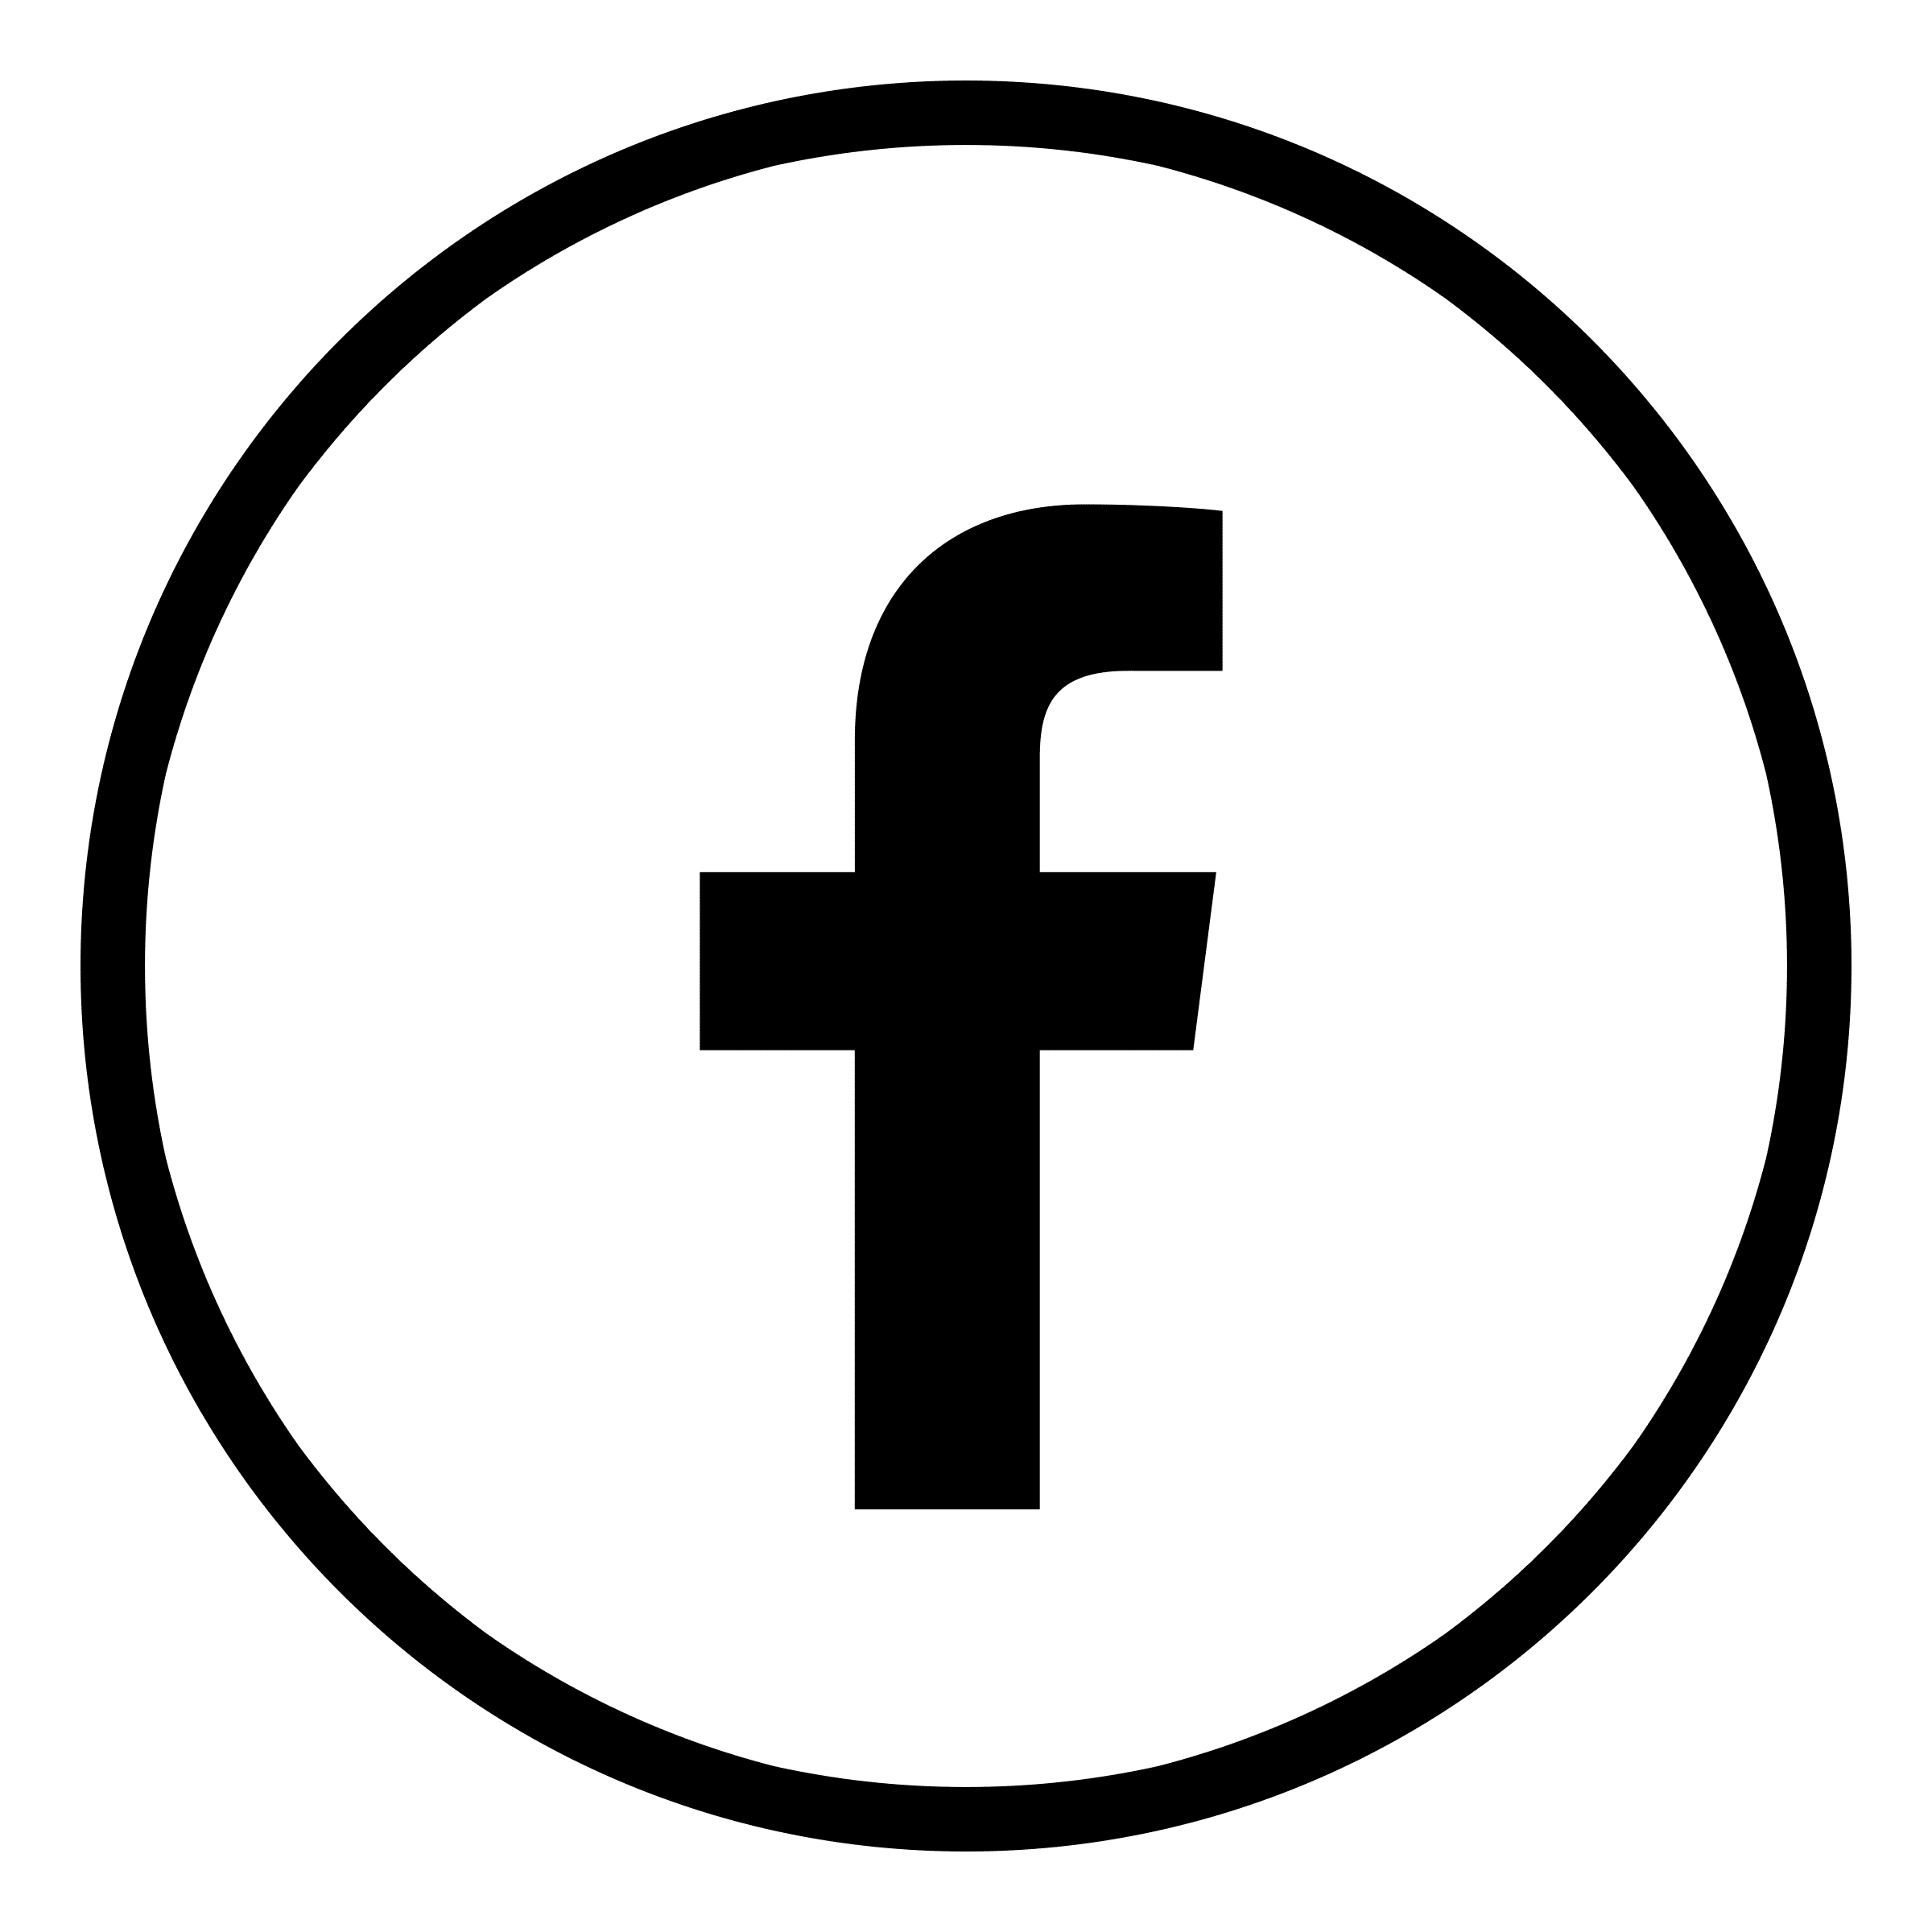 Black Facebook Logo - Kisspng Logo Social Media Facebook Brand Clip Art Facebook Logo